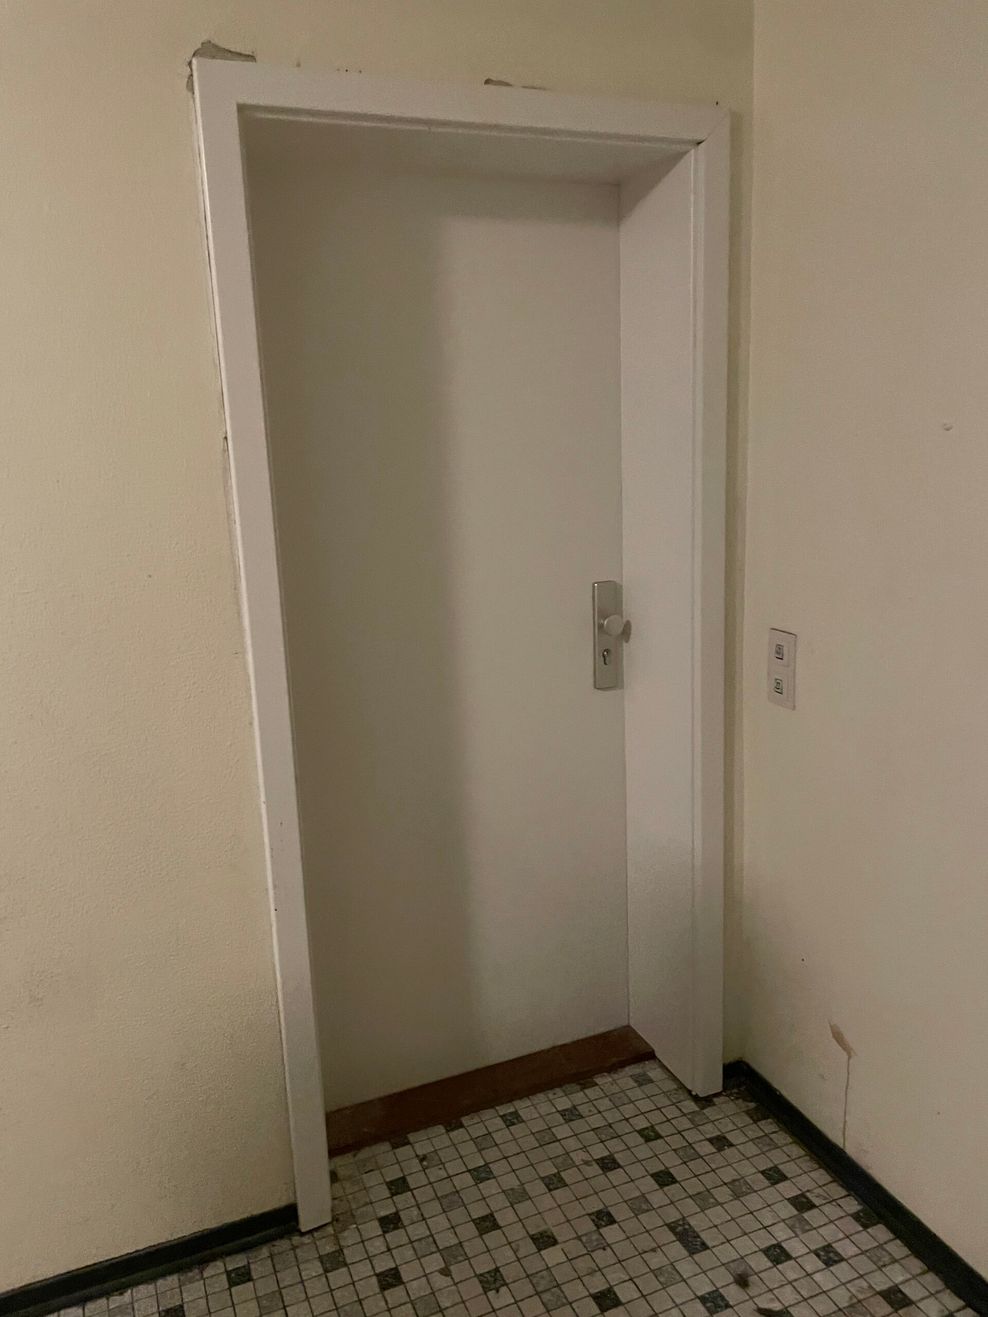 Hinter dieser Tür befindet sich die Wohnung des Tatverdächtigen.